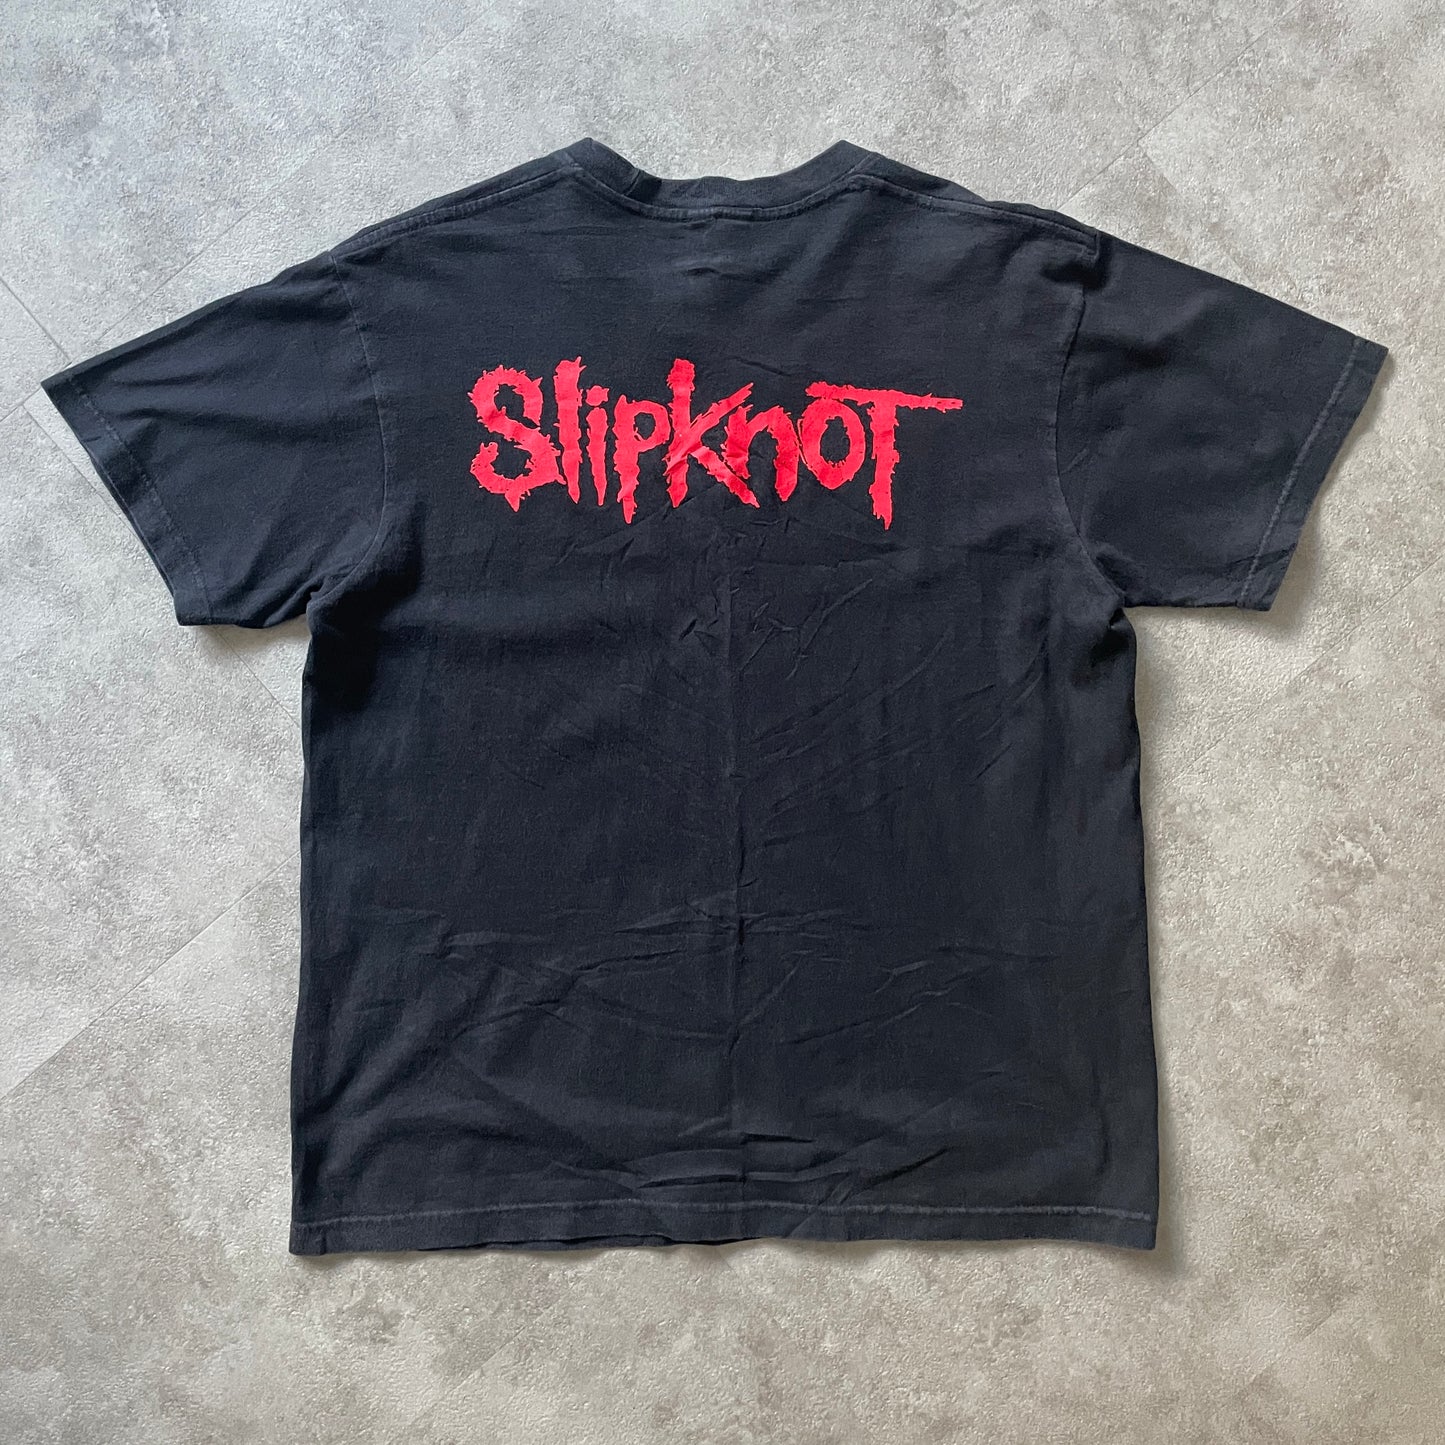 Slipknot Band Tee (Medium)